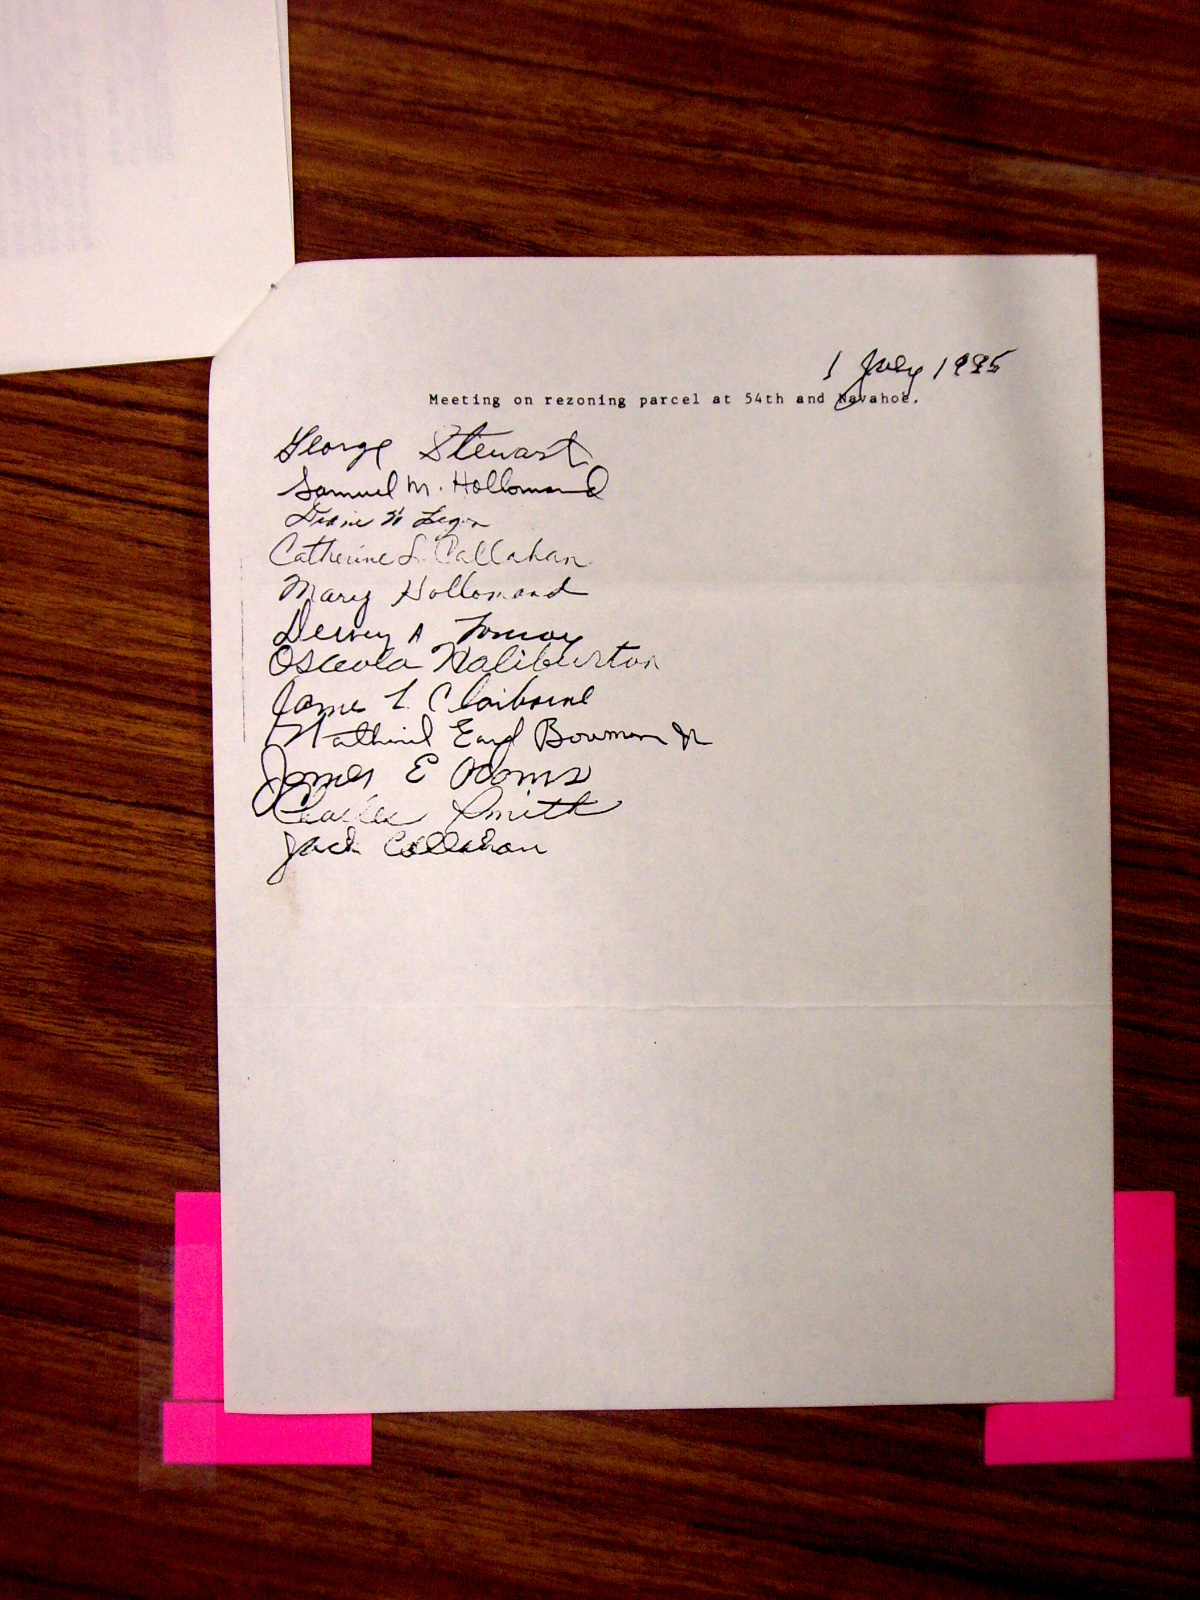 Lakeland Civic Association to Mayor dated July 5, 1985